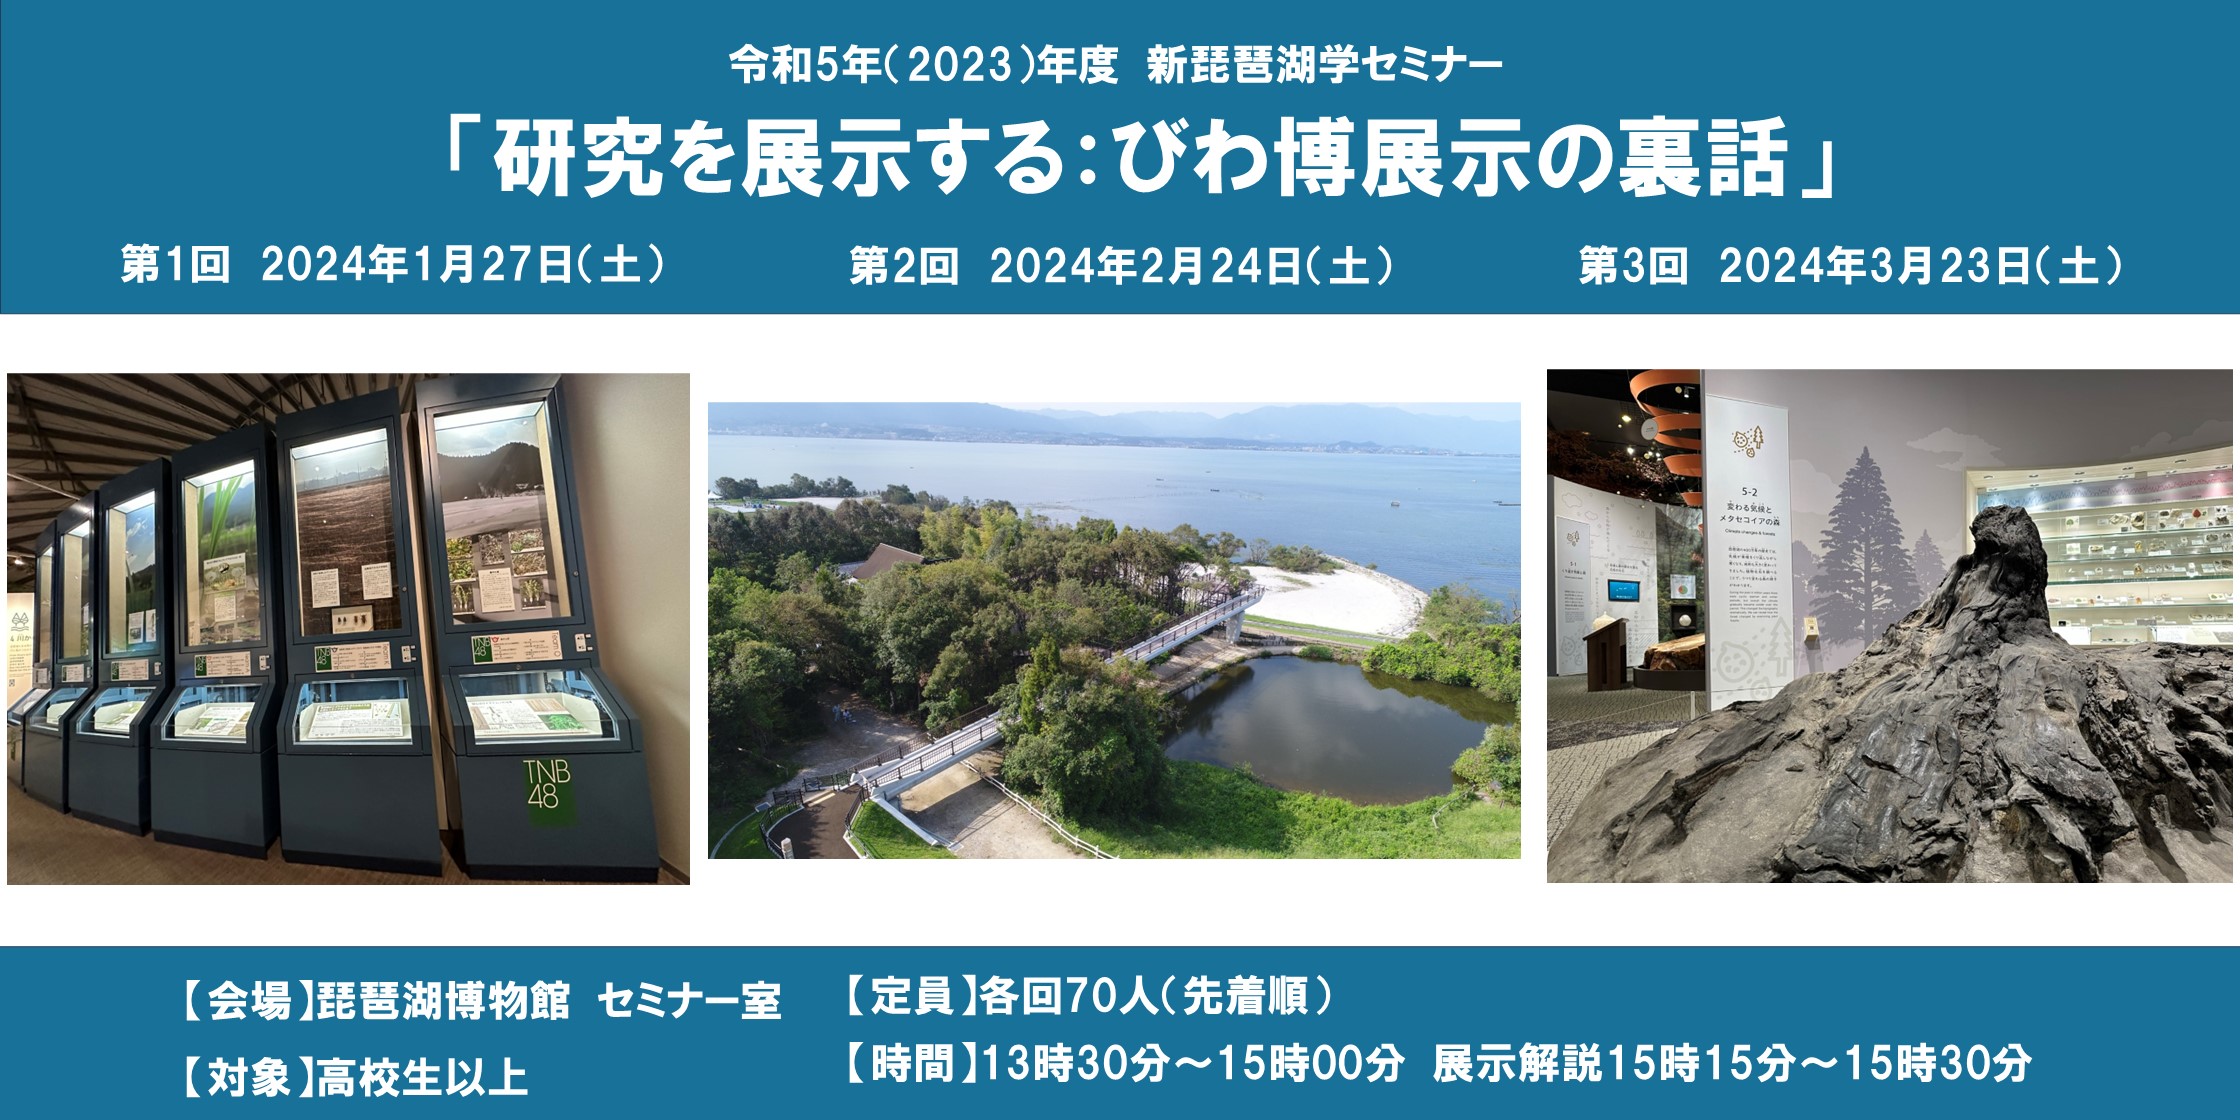 2023新琵琶湖学セミナーバナー（クリック文言抜き）.jpg